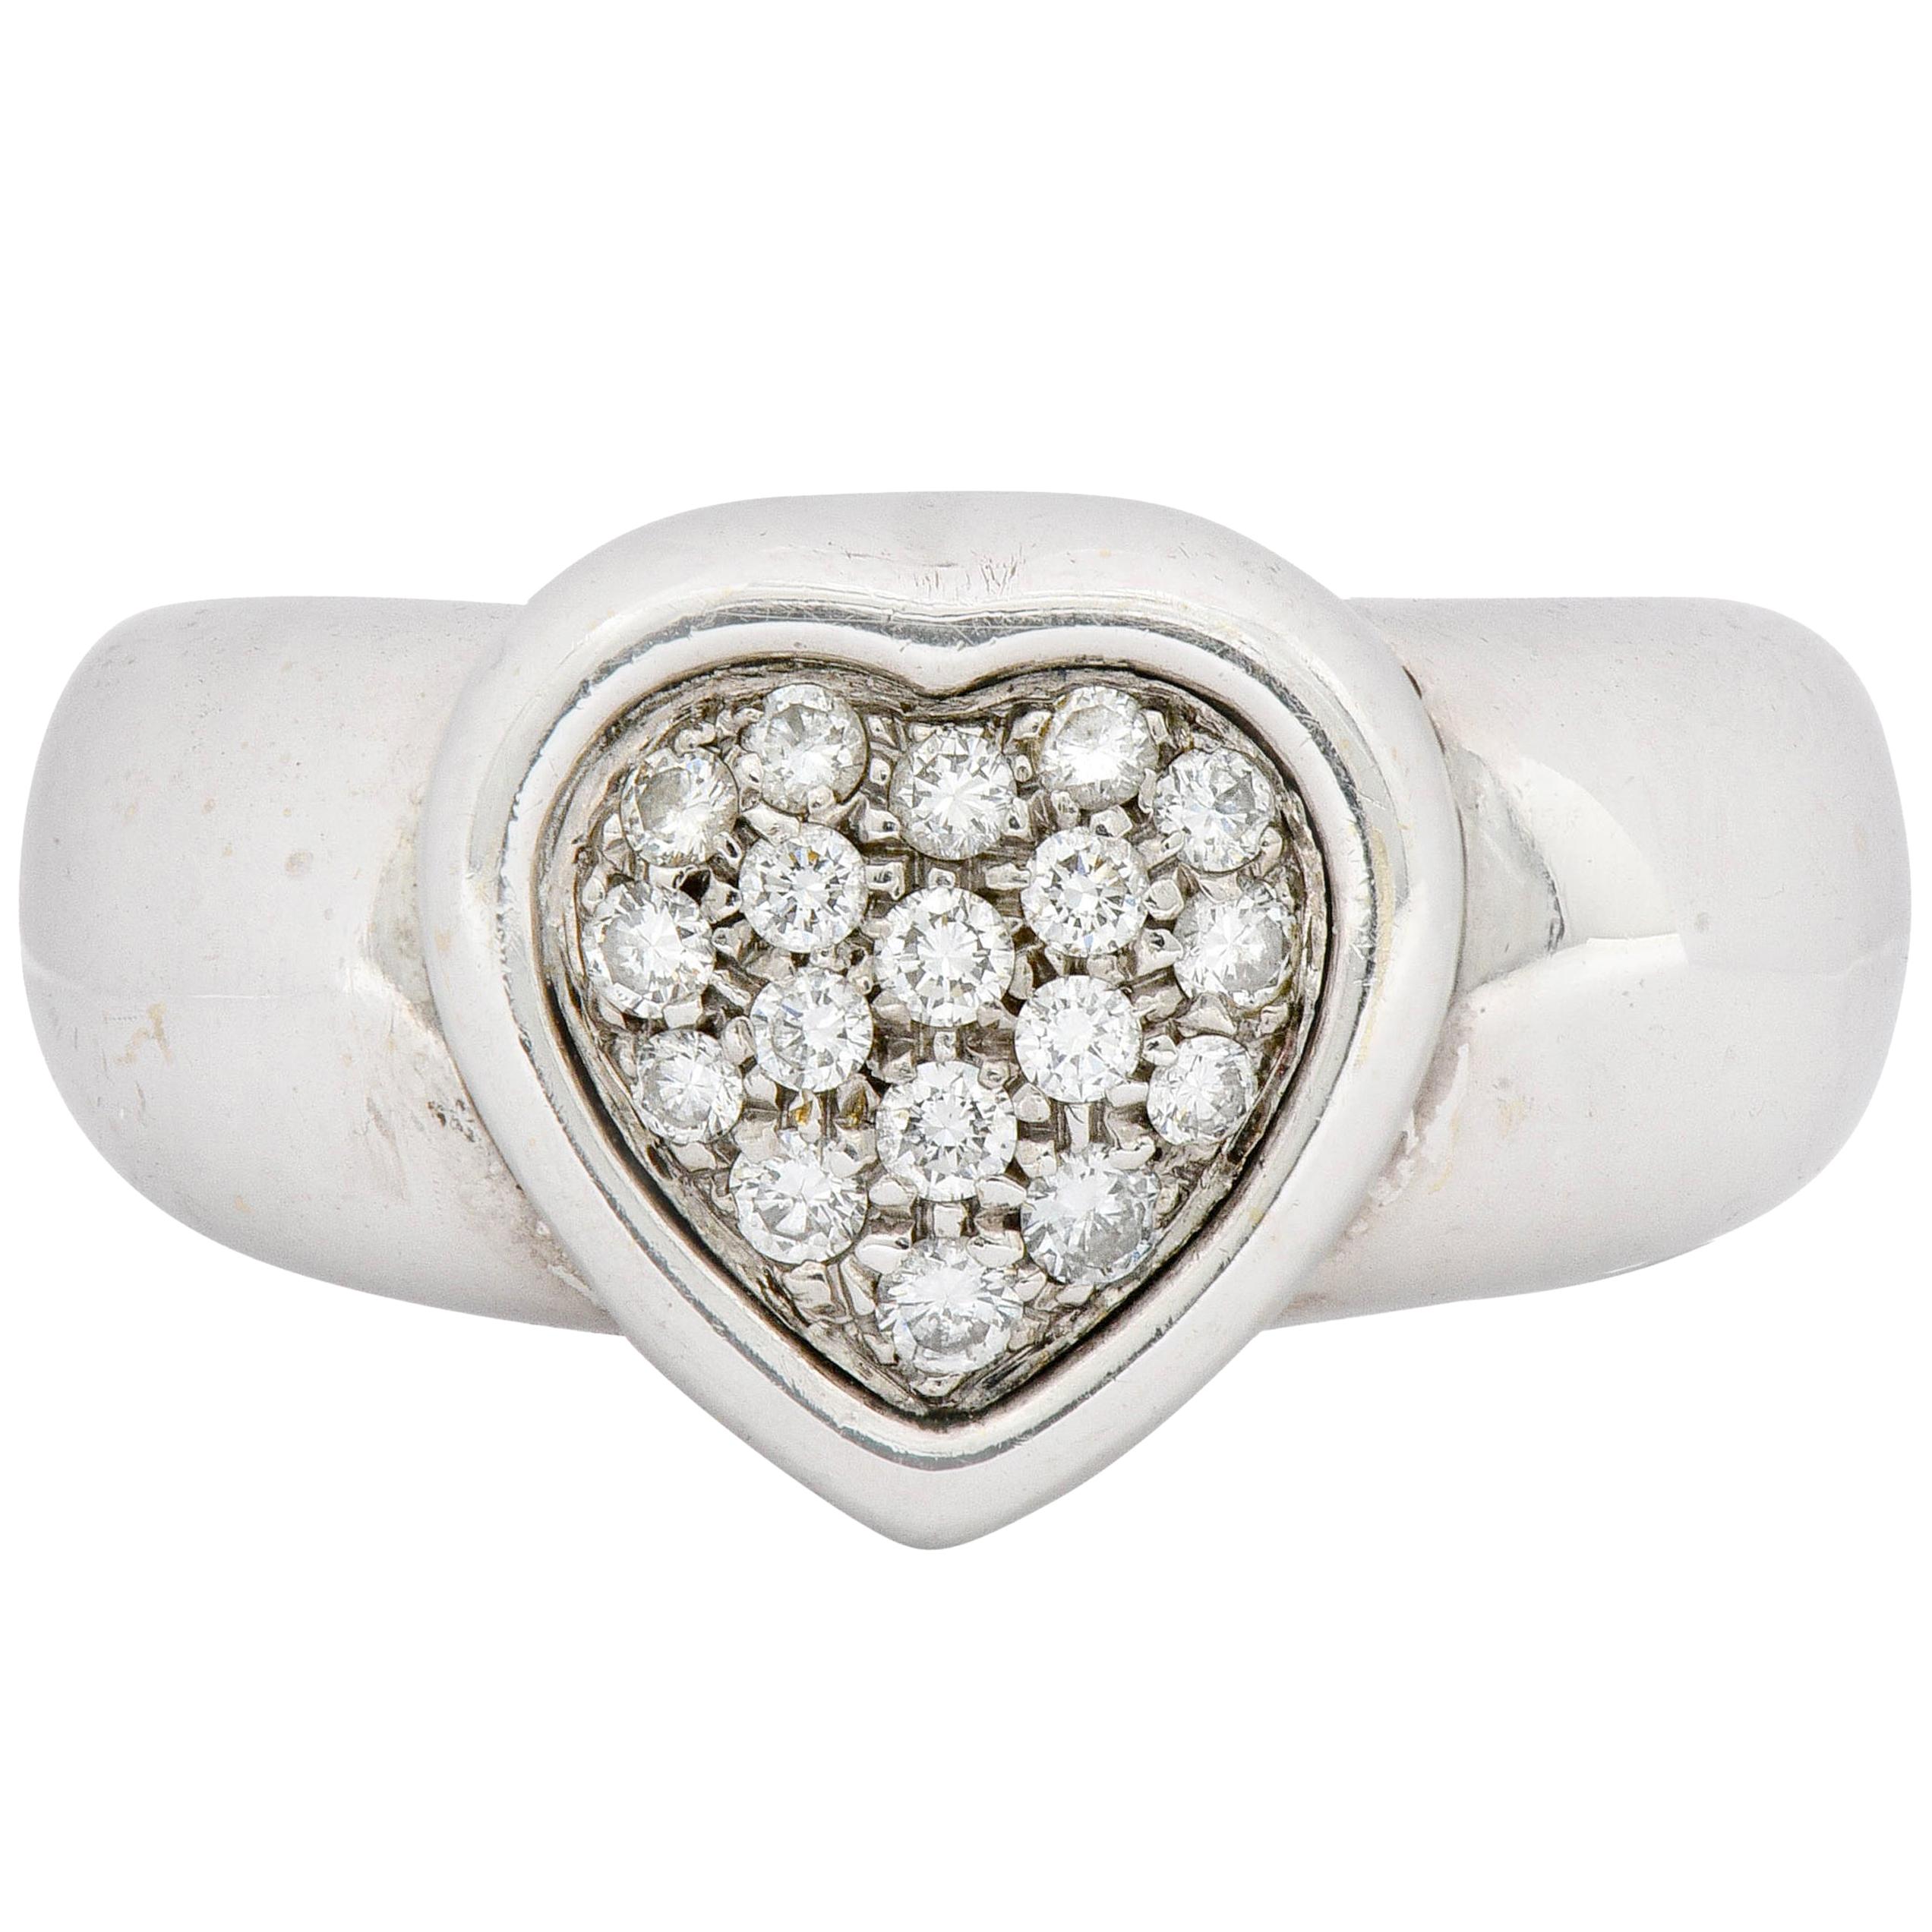 1997 Piaget 0.36 Carat Pave Diamond 18 Karat White Gold Heart Ring